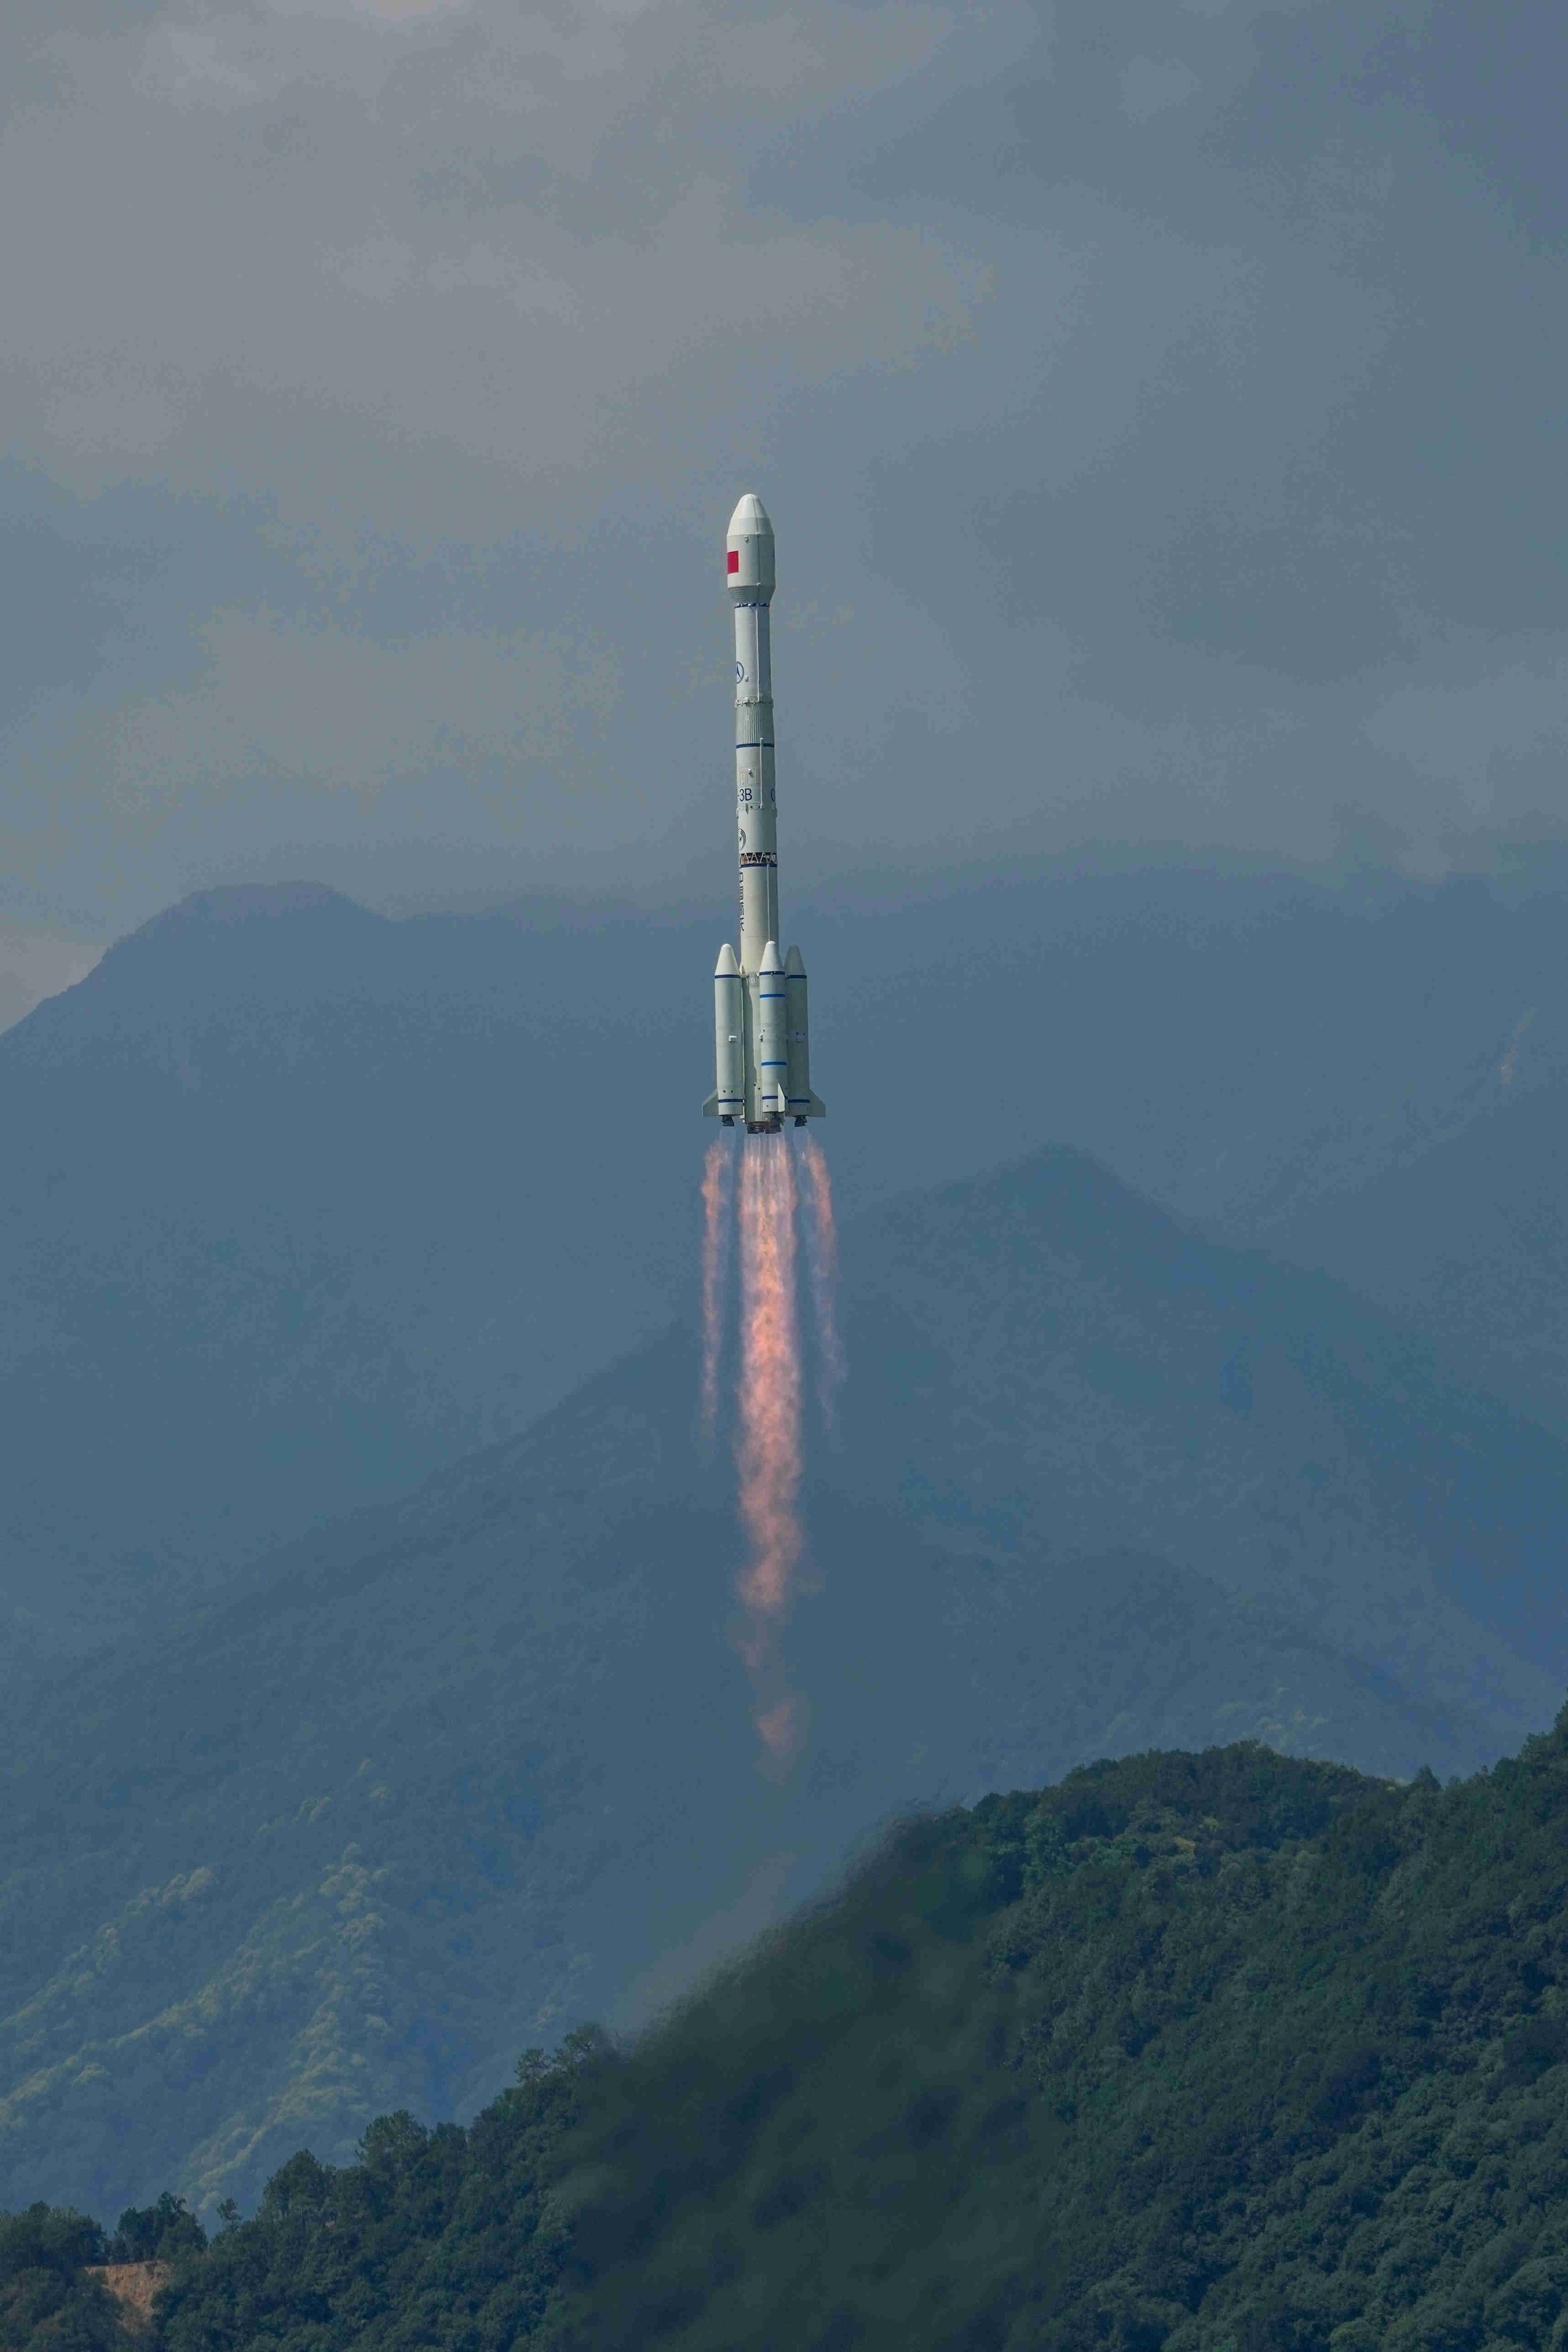 拍摄:万全此次发射的北斗导航卫星和配套运载火箭由中国航天科技集团